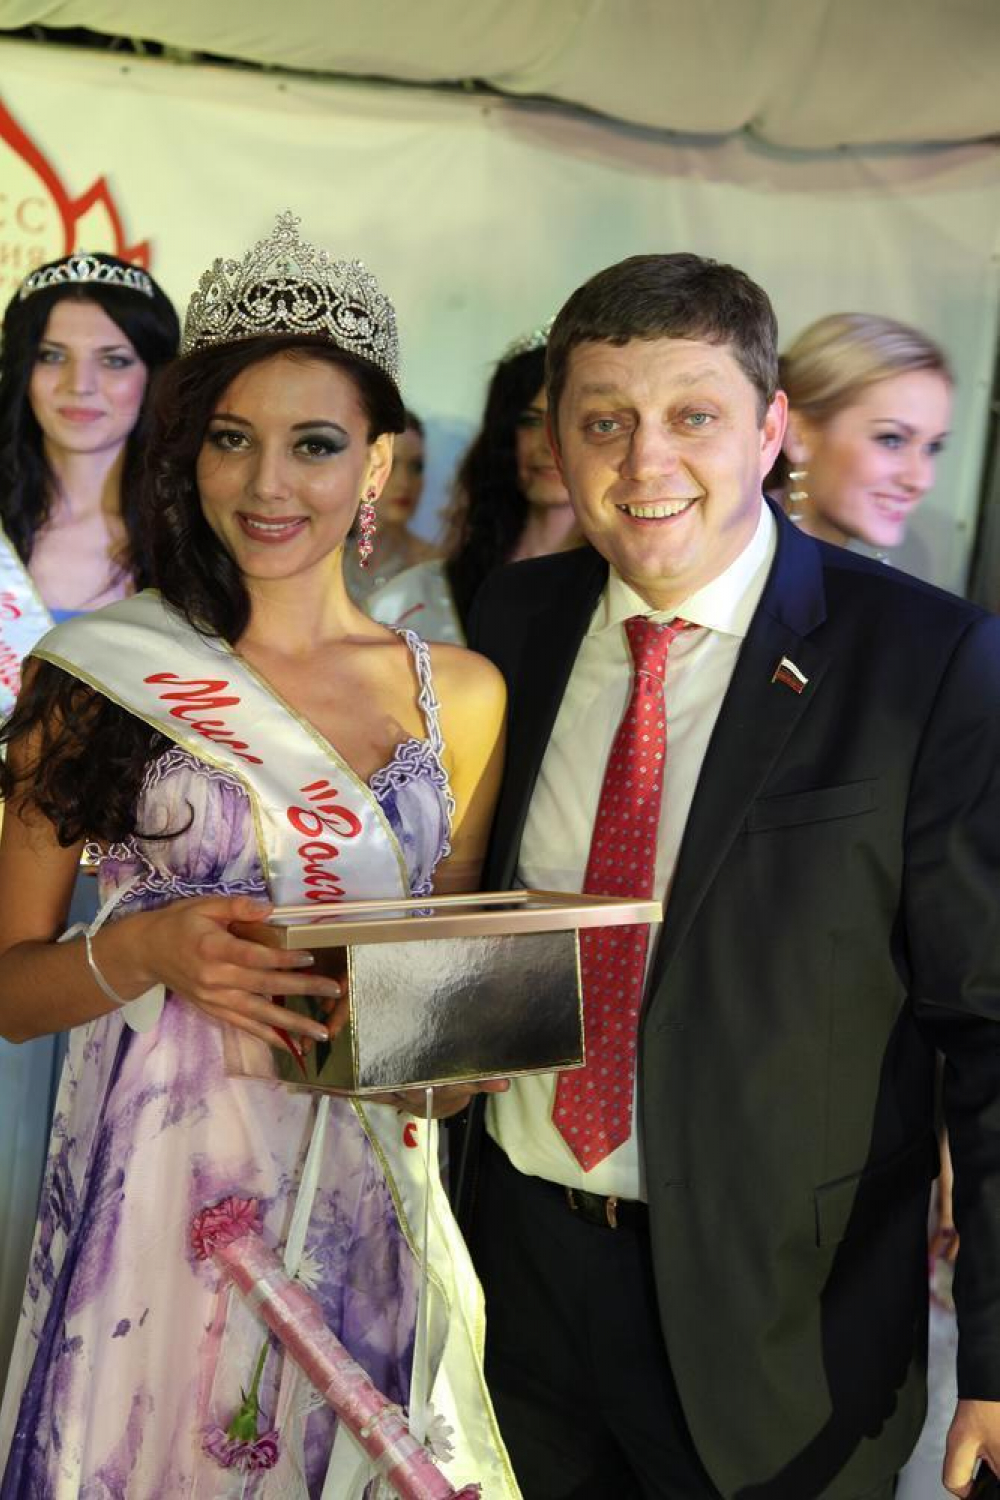 Фоторепортаж с конкурса «Мисс Волгоград 2012»